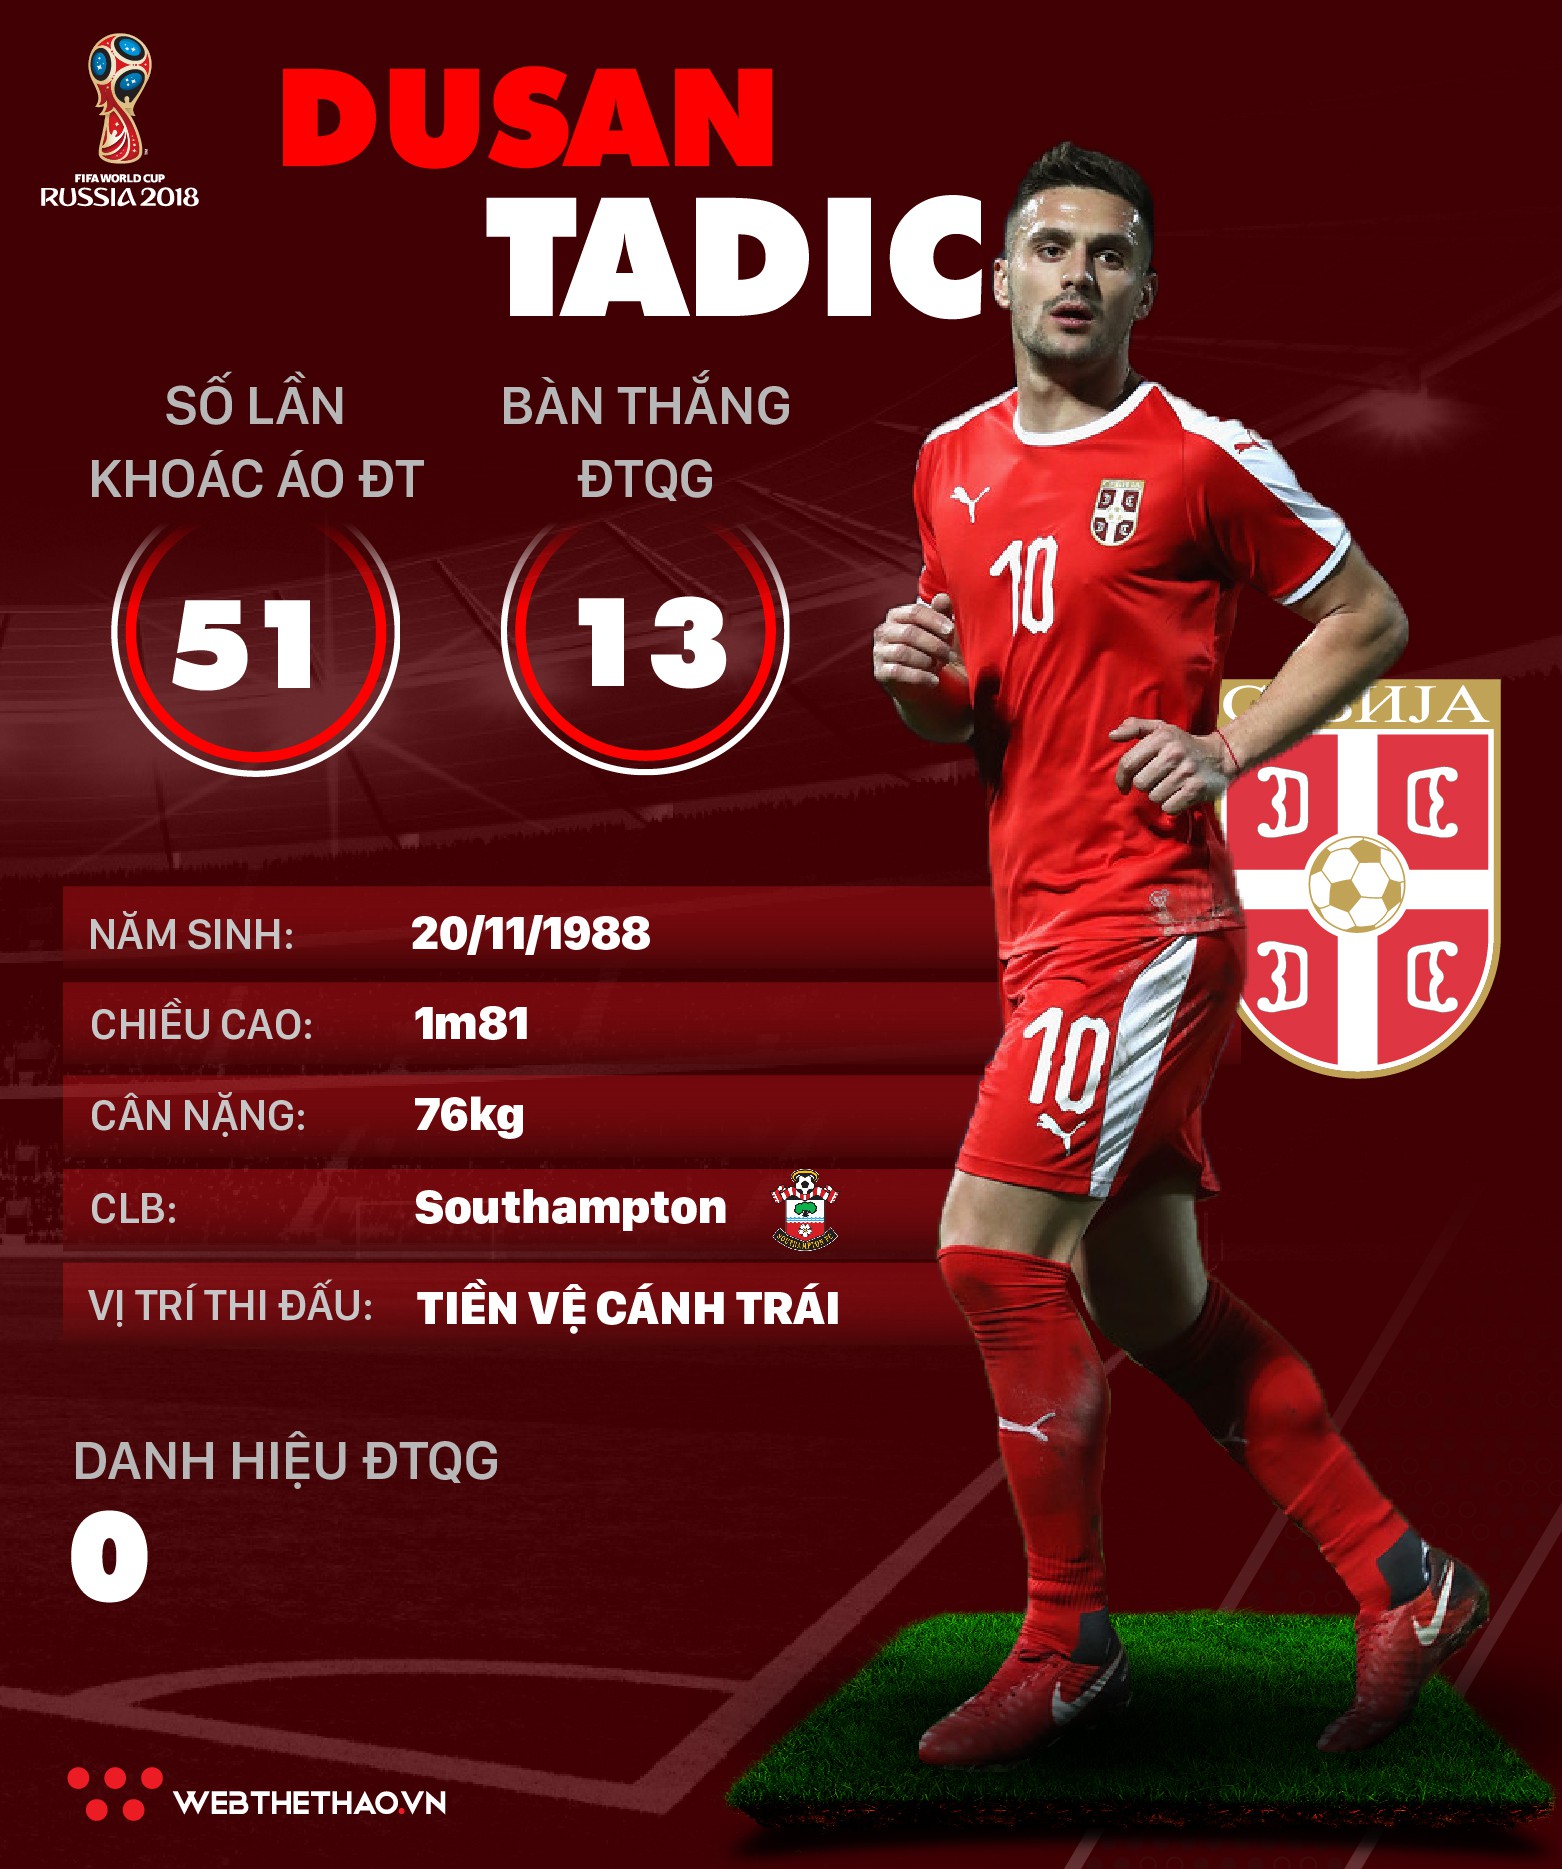 Thông tin cầu thủ Dusan Tadic của ĐT Serbia dự World Cup 2018 - Ảnh 1.